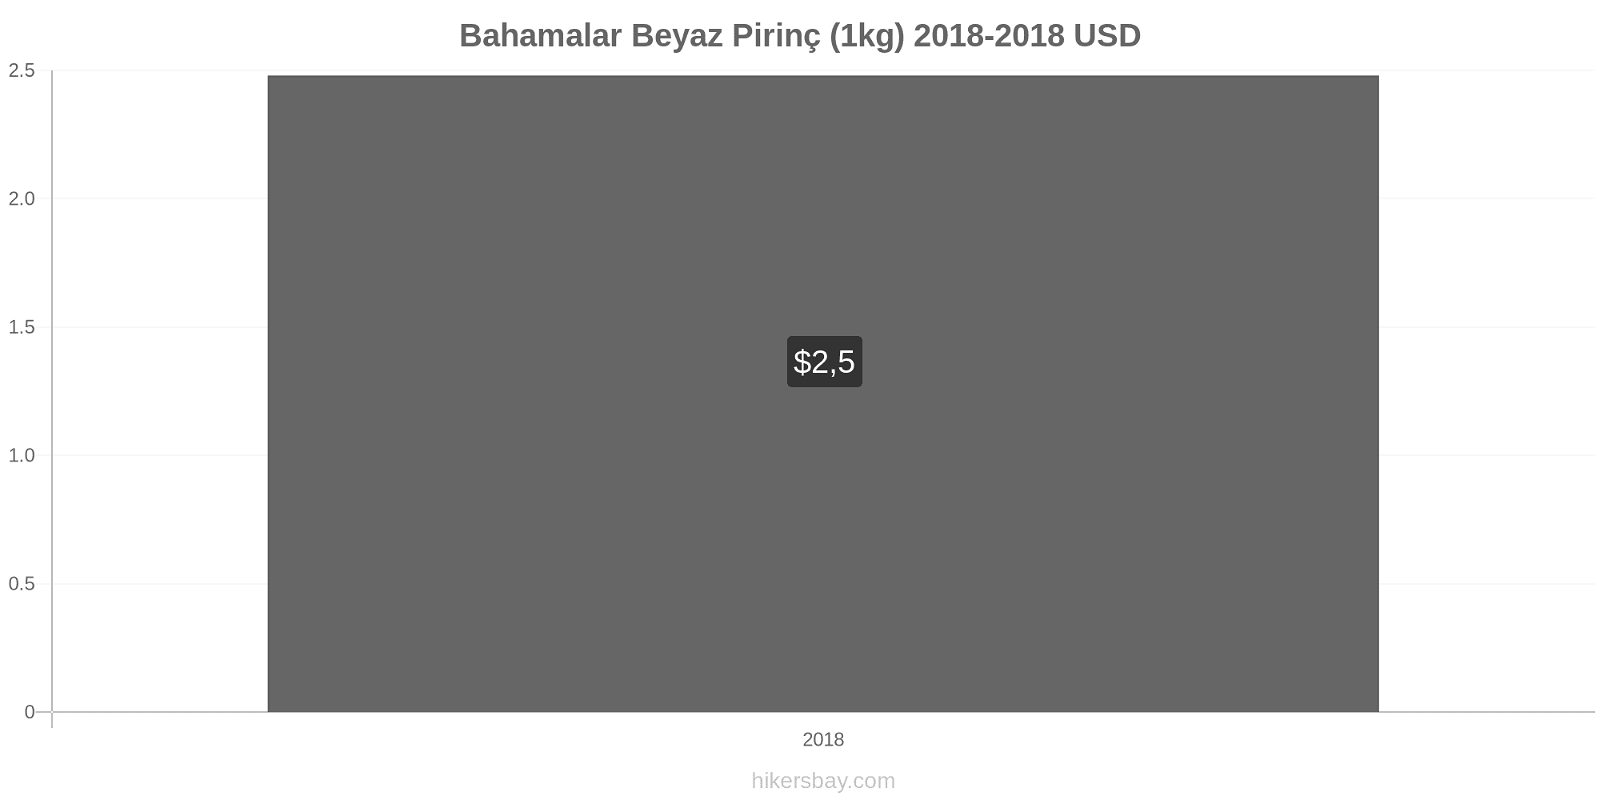 Bahamalar fiyat değişiklikleri Bir kilo beyaz pirinç hikersbay.com